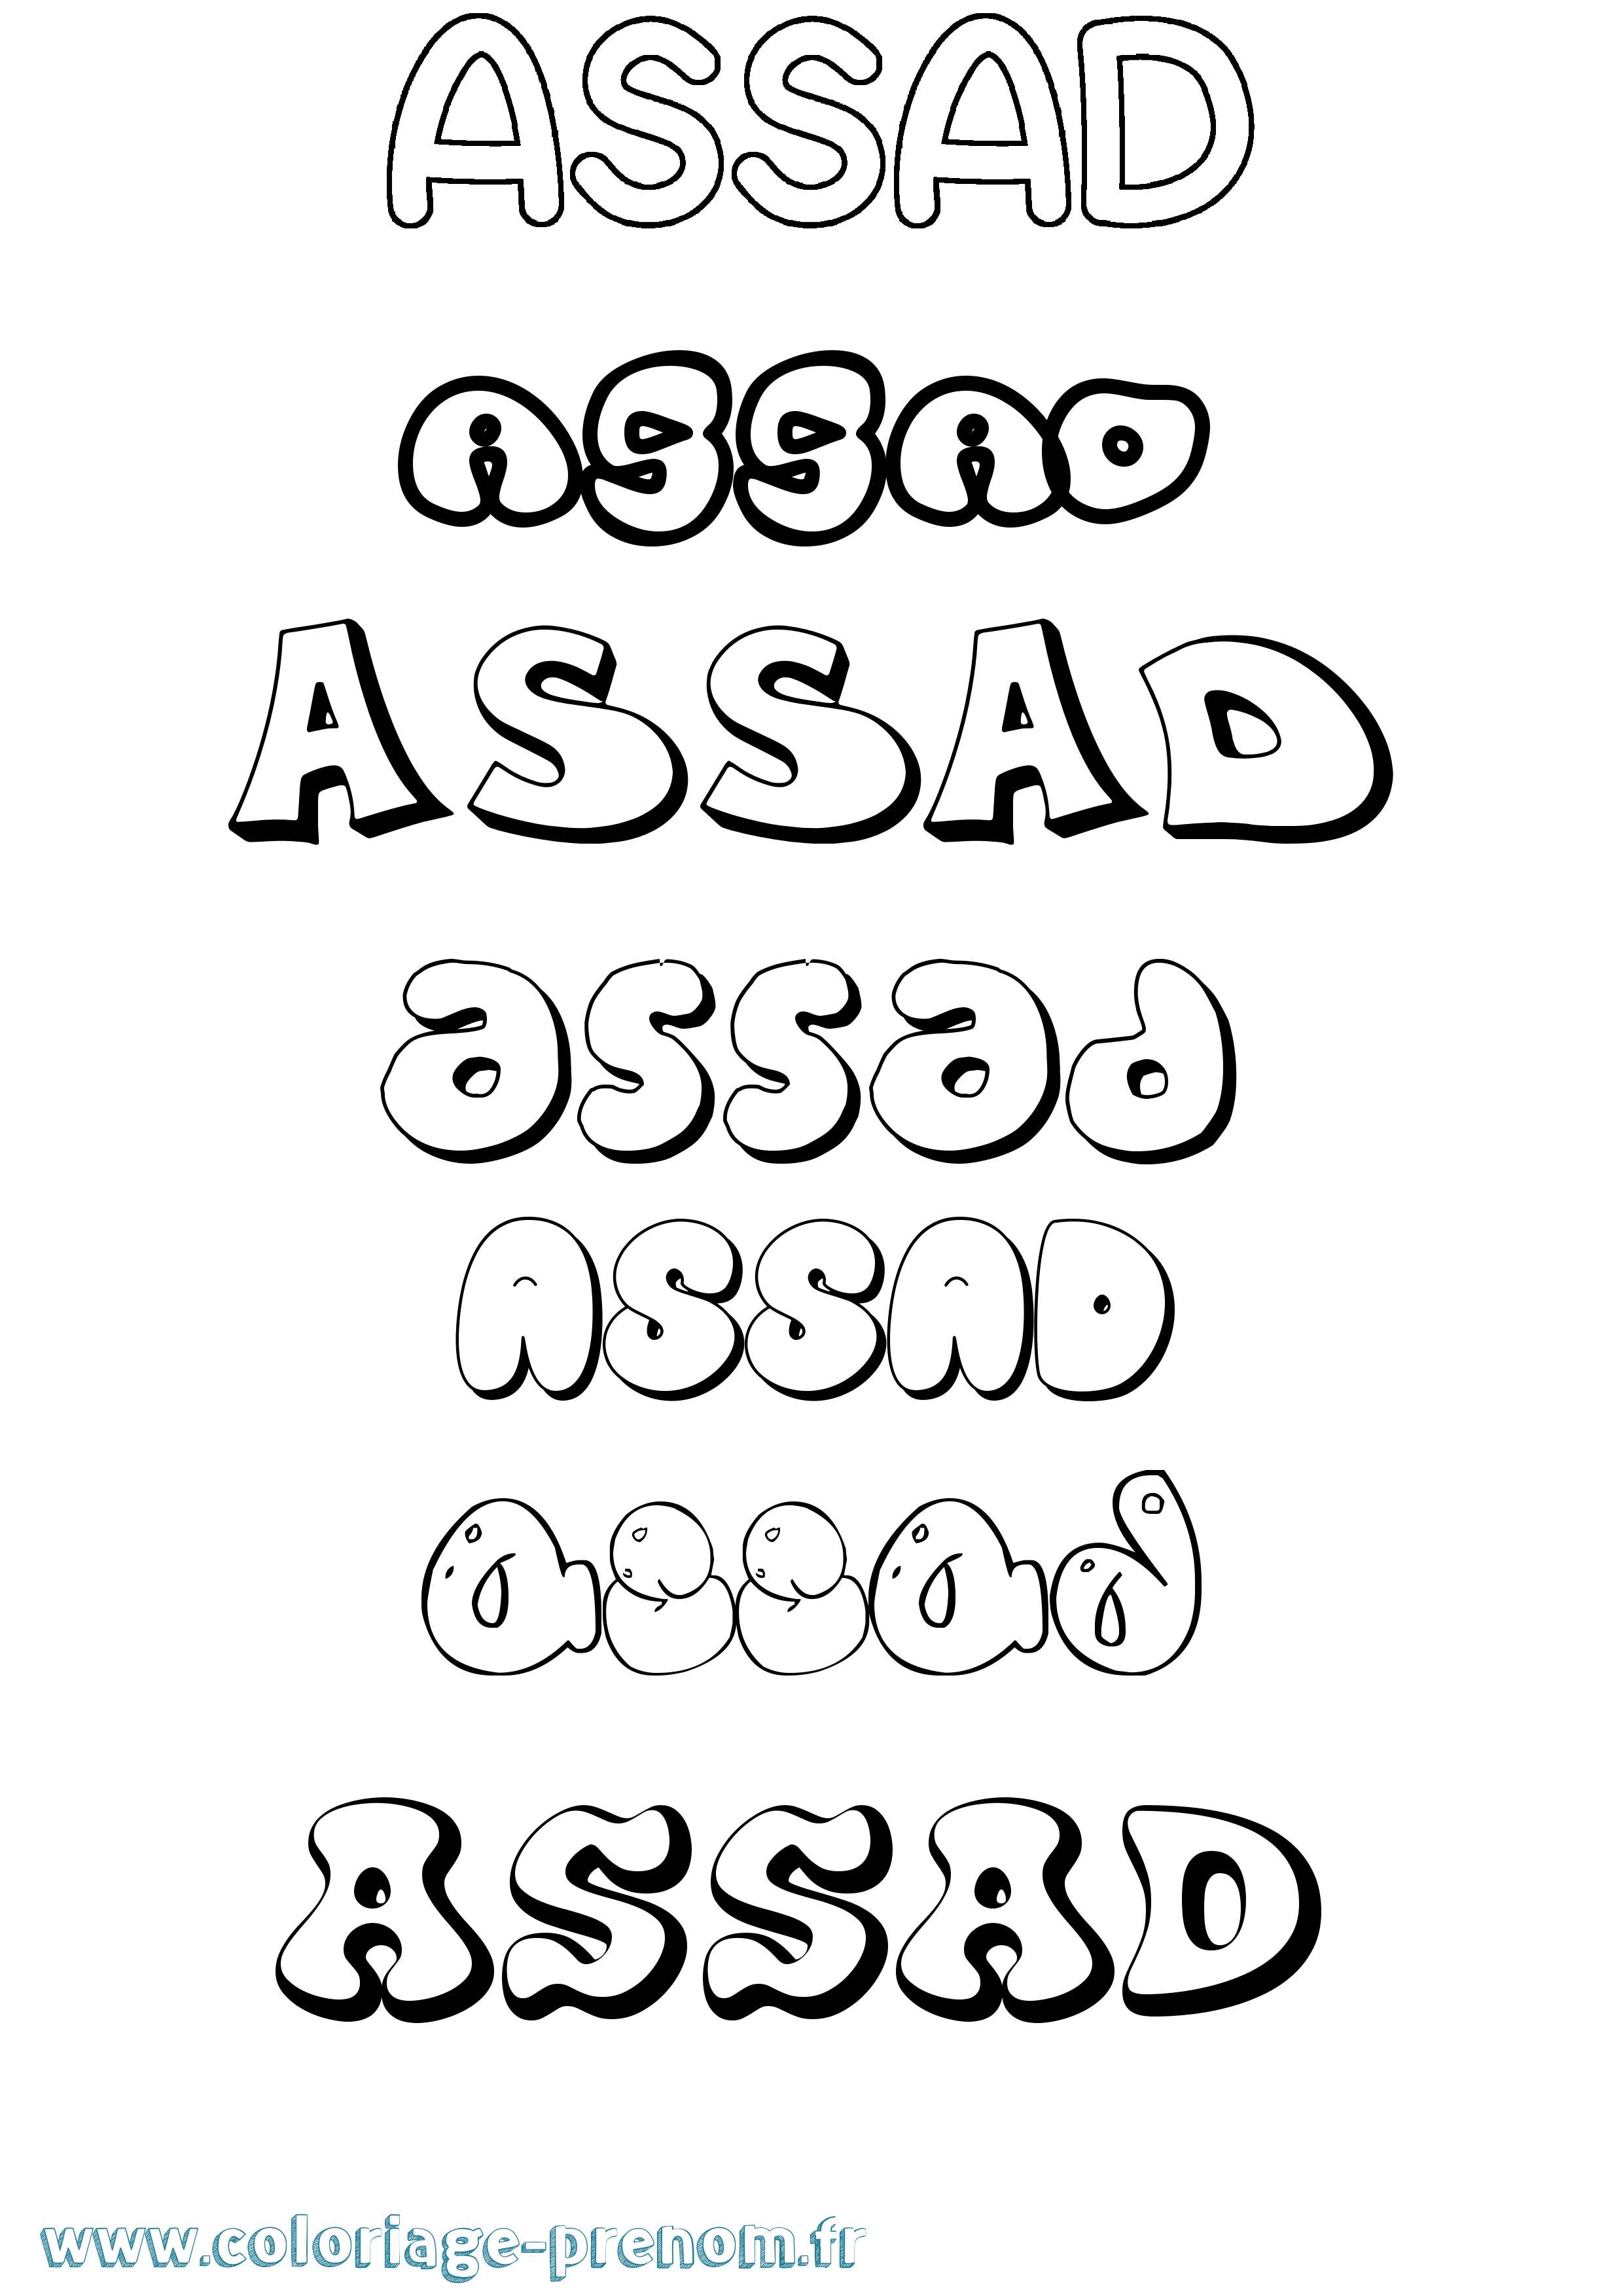 Coloriage prénom Assad Bubble